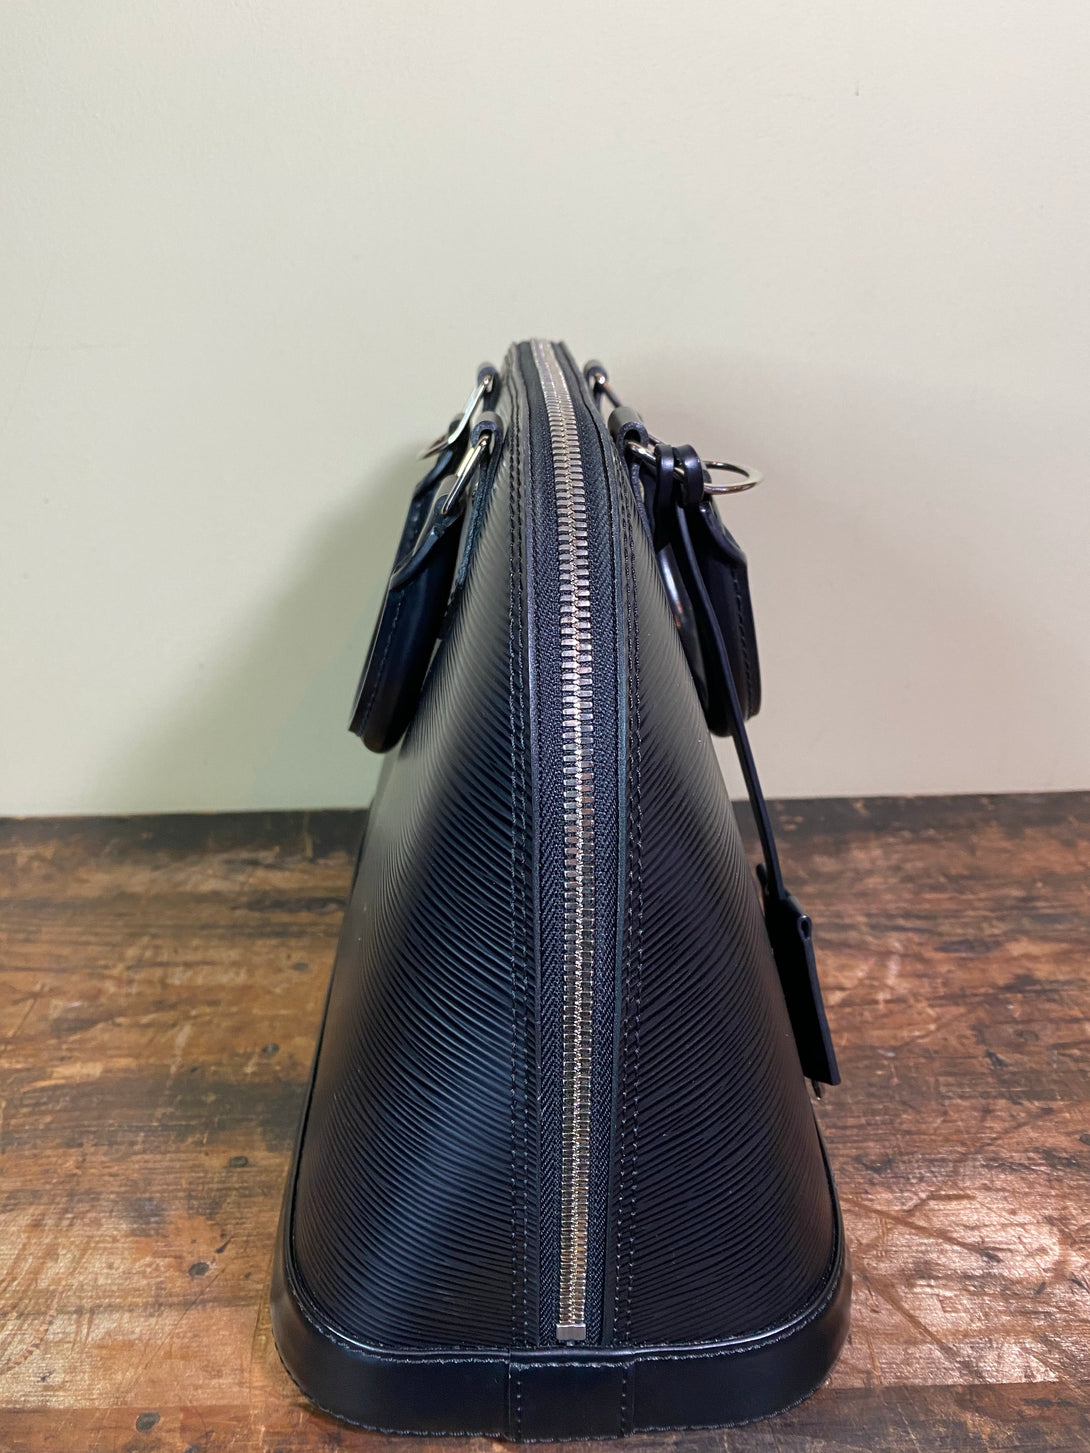 Louis Vuitton Black Epi Leather "Alma" PM Tote - Siopaella Designer Exchange